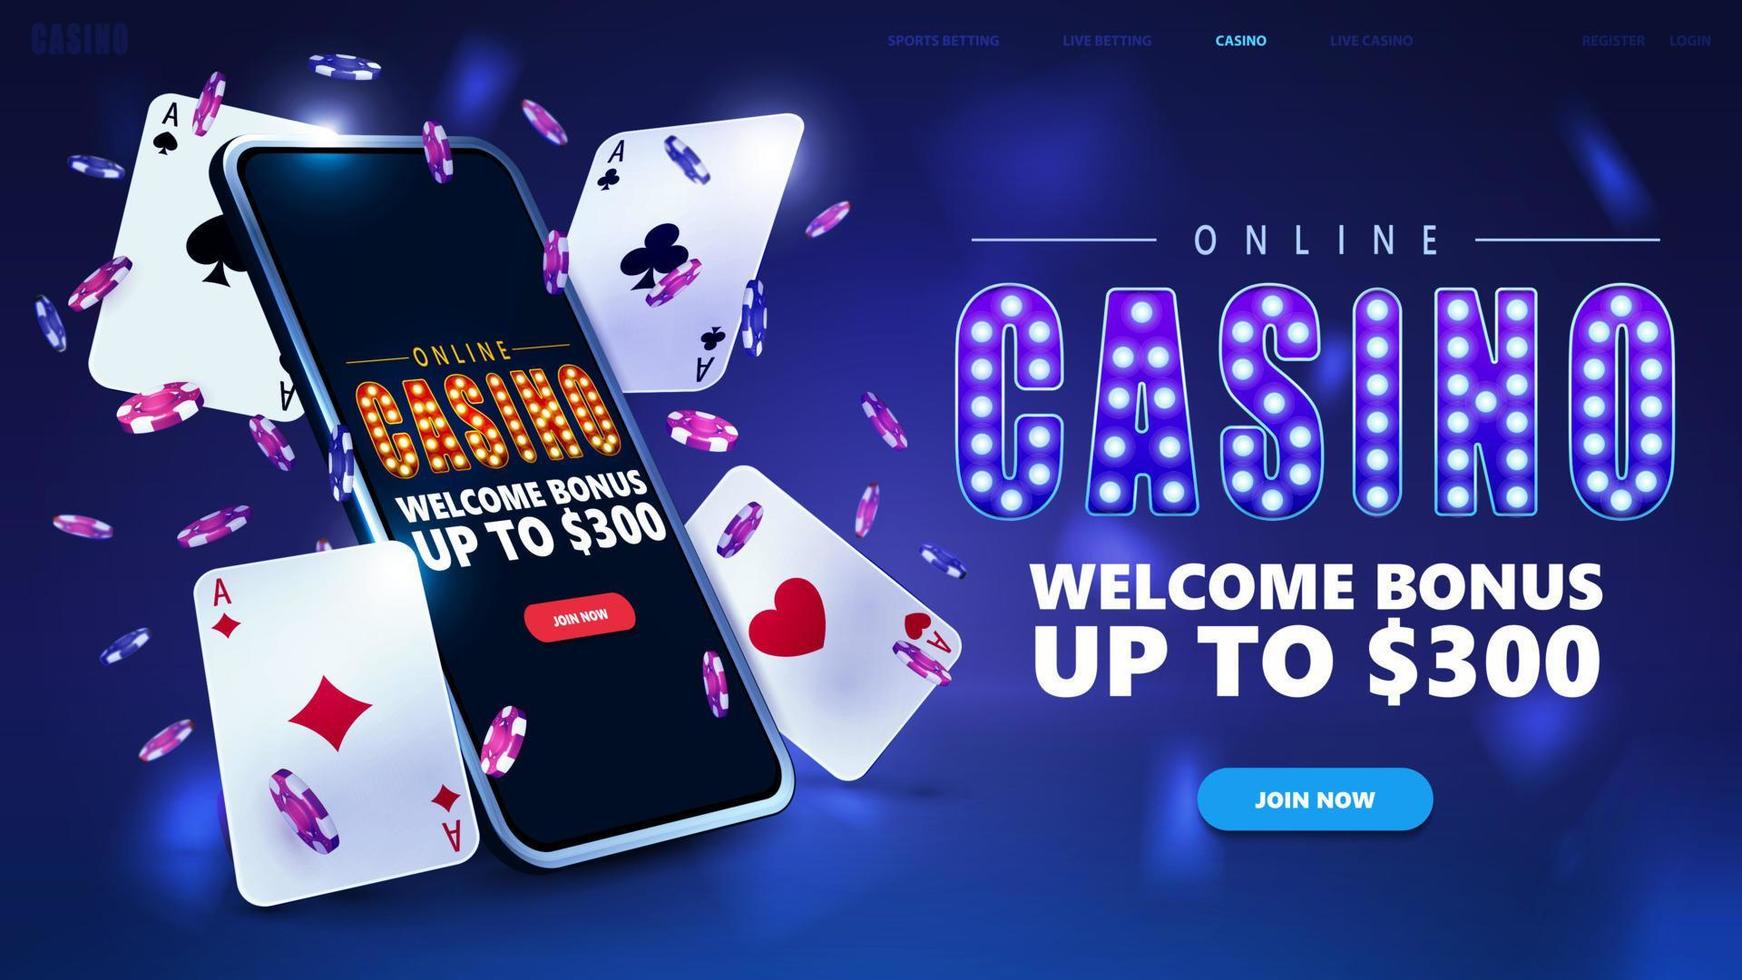 casino en ligne, bannière pour site Web avec bouton, smartphone, jetons de poker et cartes à jouer en scène bleue vecteur